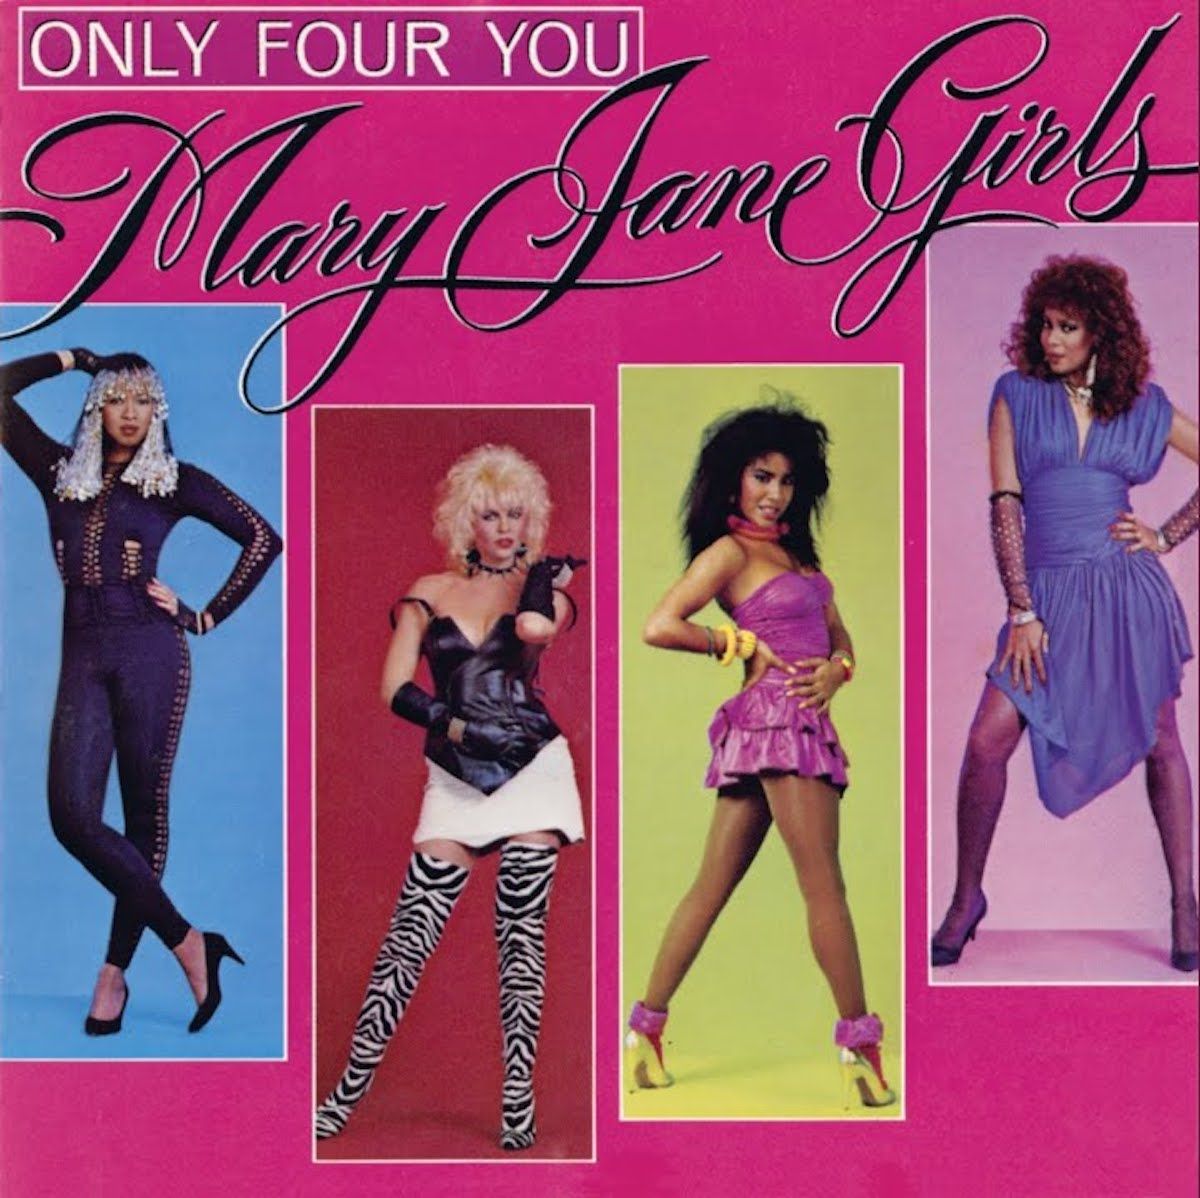 Mary Jane mergaičių albumo viršelis tik iš keturių tavęs